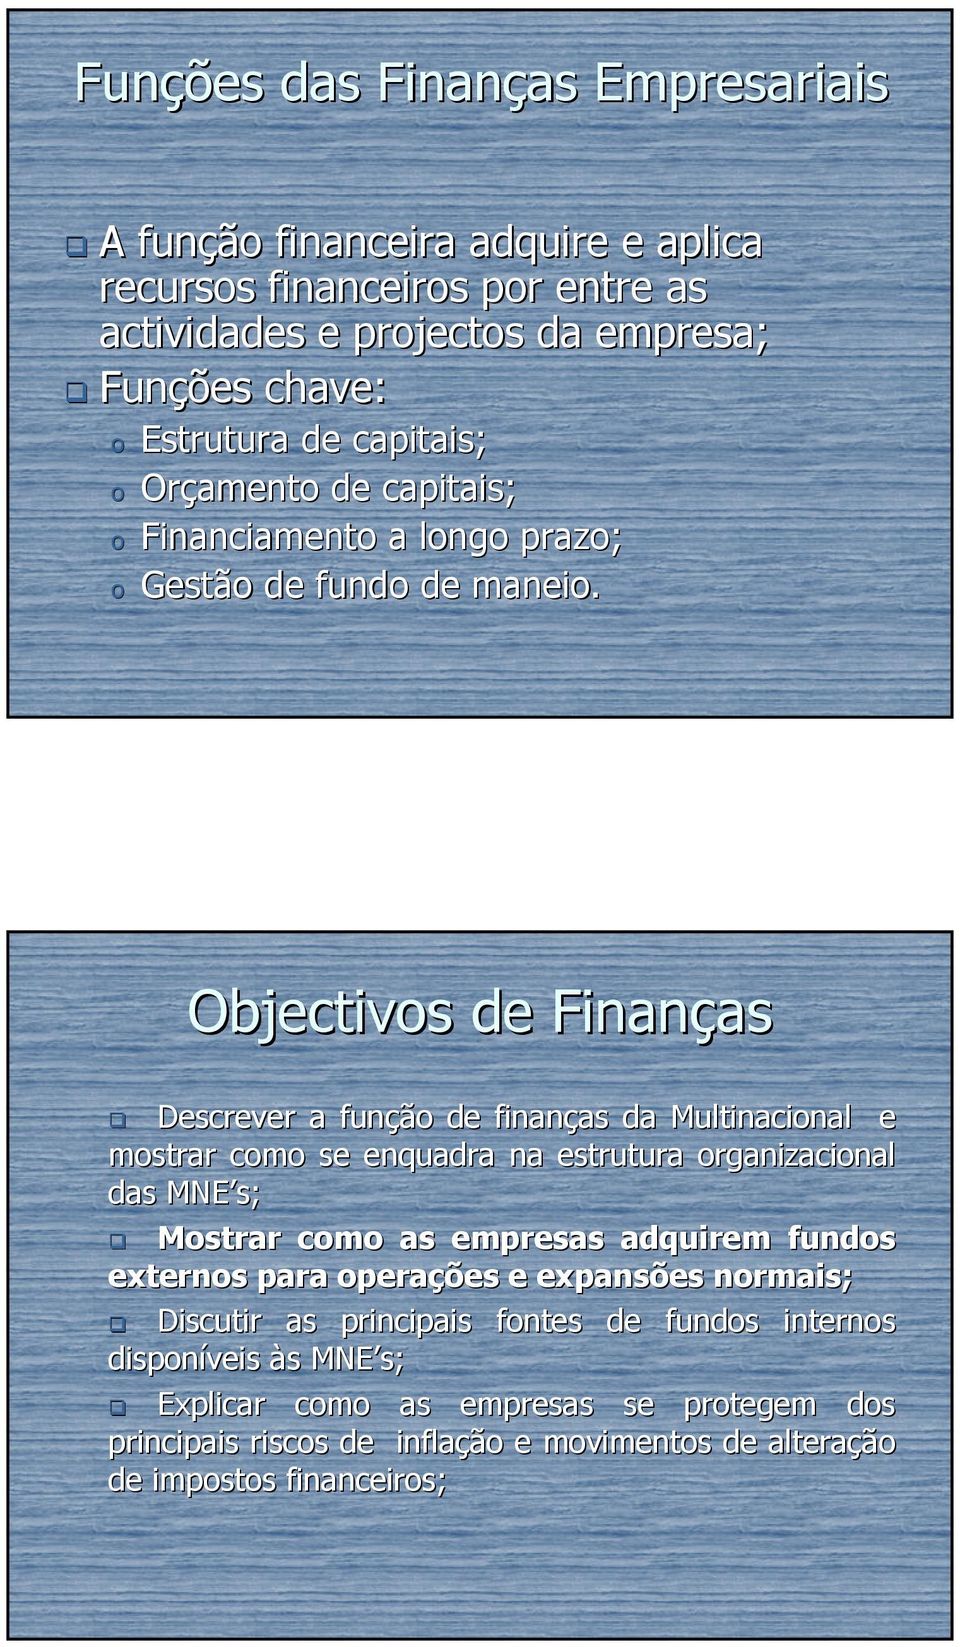 Objectivos de Finanças as Descrever a função de finanças as da Multinacional e mostrar como se enquadra na estrutura organizacional das MNE s; Mostrar como as empresas